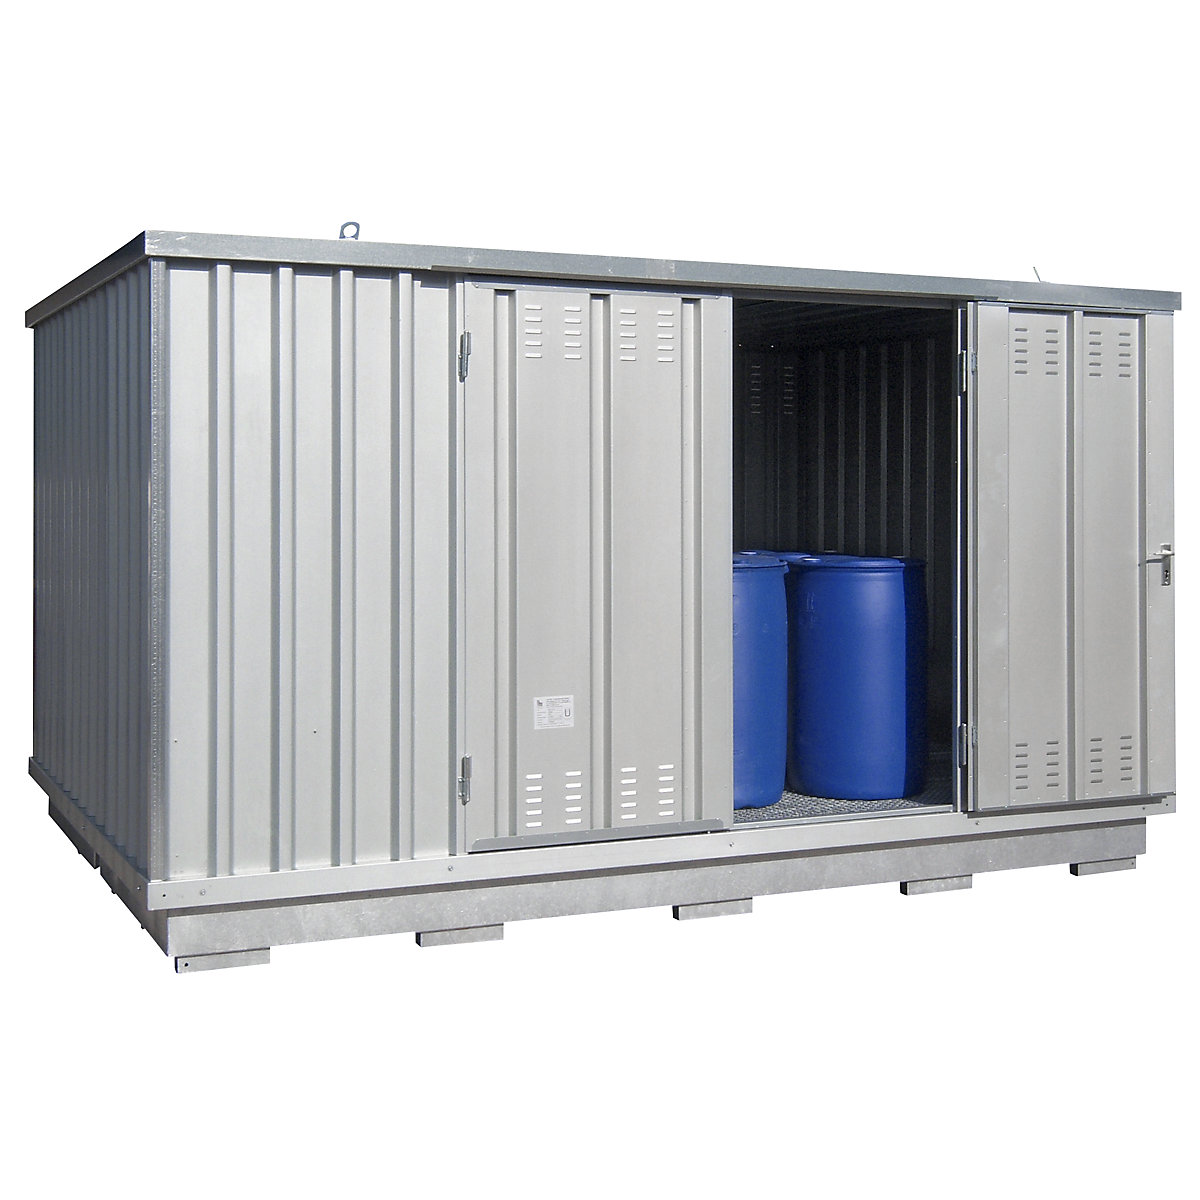 Gevaarlijke stoffen opslagcontainer voor waterverontreinigende vloeistoffen - LaCont